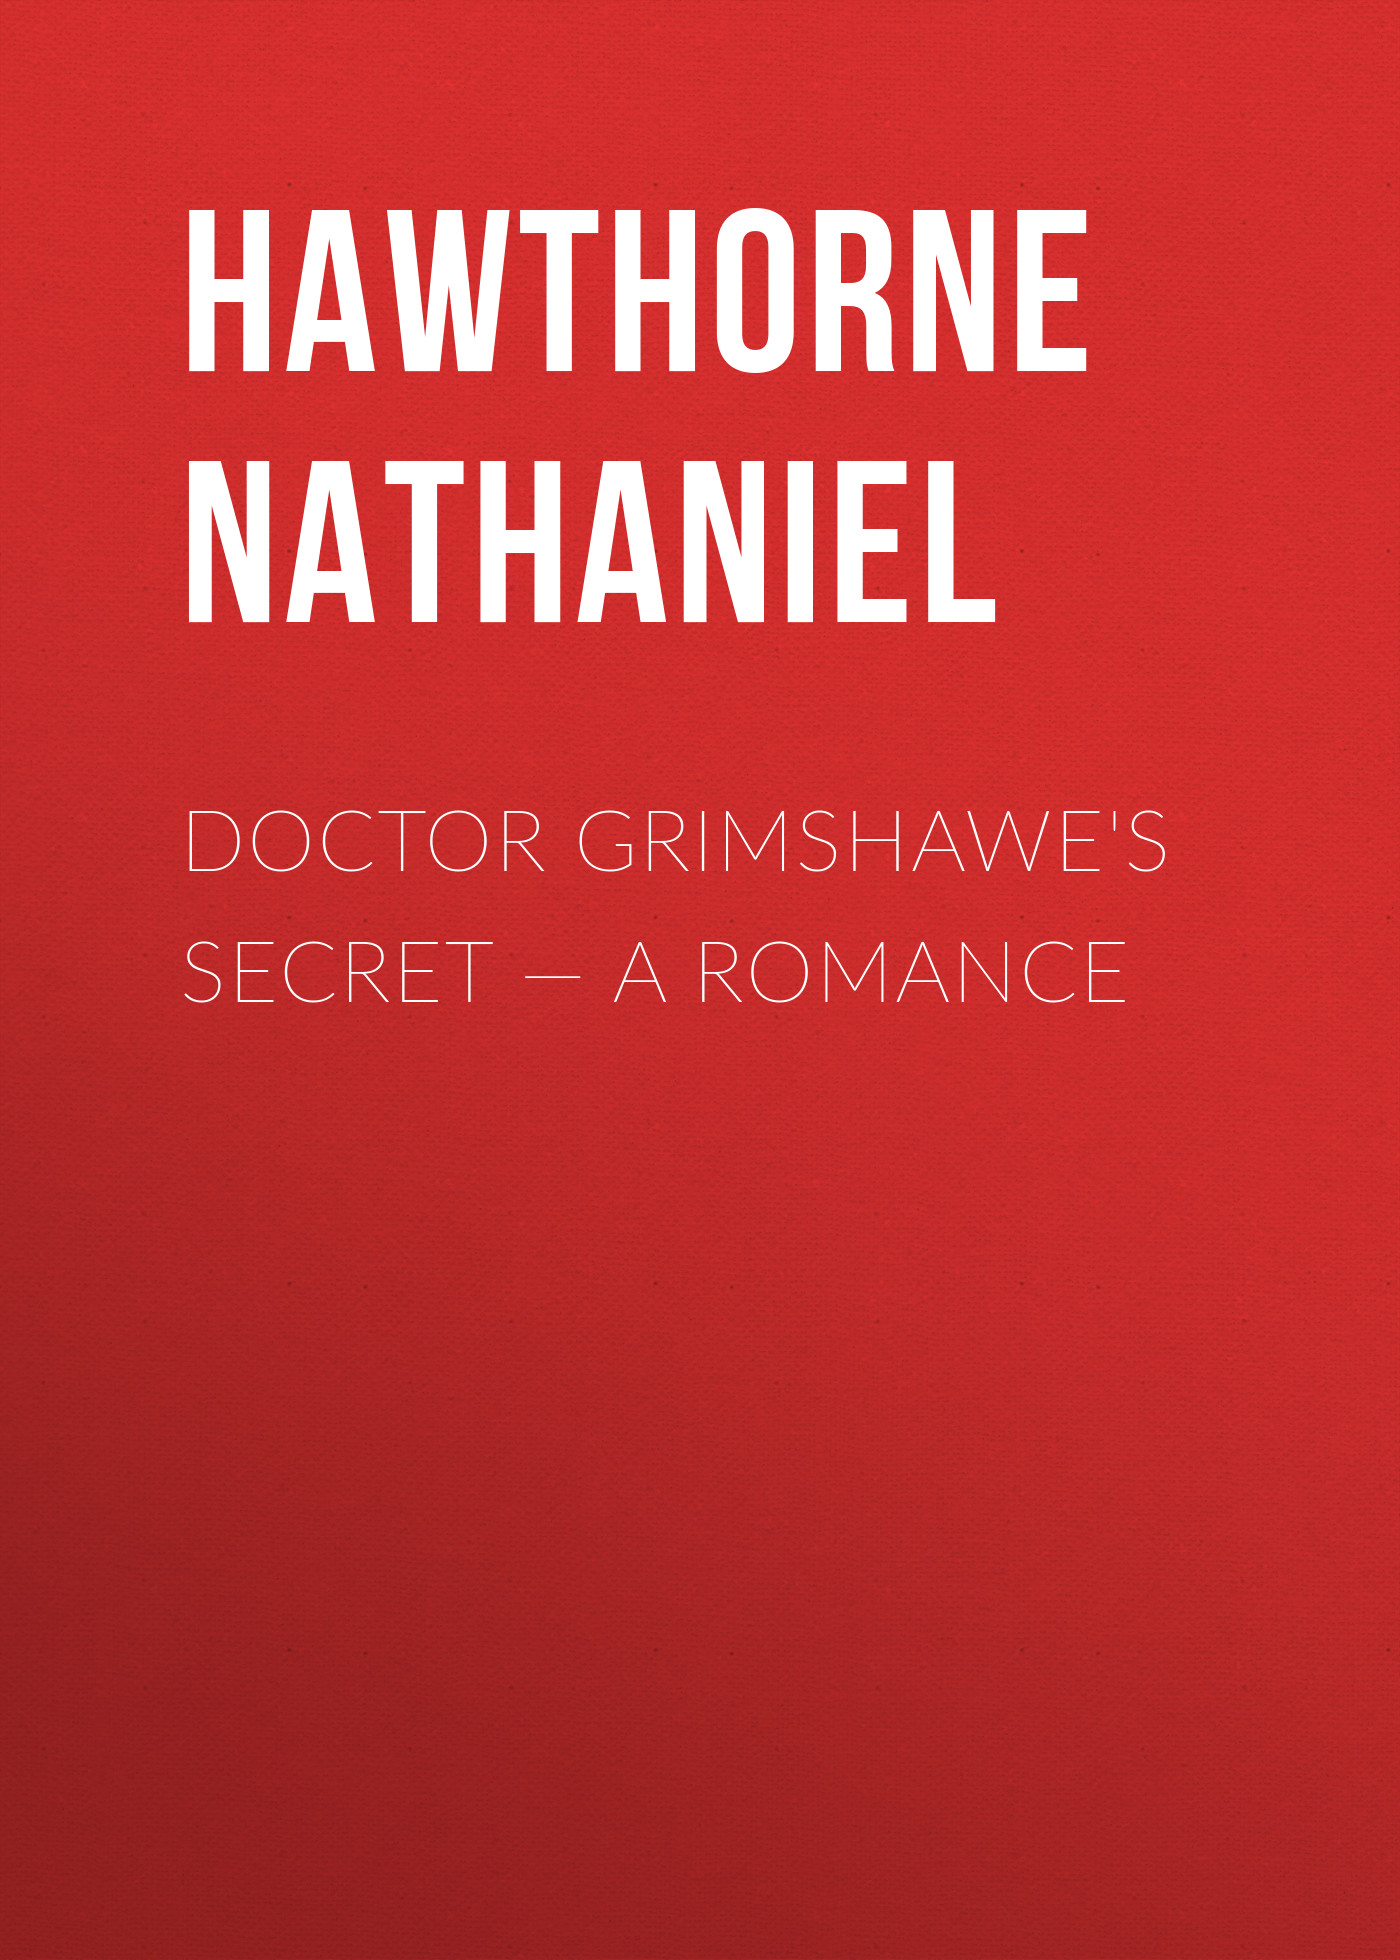 Книга Doctor Grimshawe's Secret – a Romance из серии , созданная Nathaniel Hawthorne, может относится к жанру Литература 19 века, Зарубежная старинная литература, Зарубежная классика. Стоимость электронной книги Doctor Grimshawe's Secret – a Romance с идентификатором 25558876 составляет 0 руб.